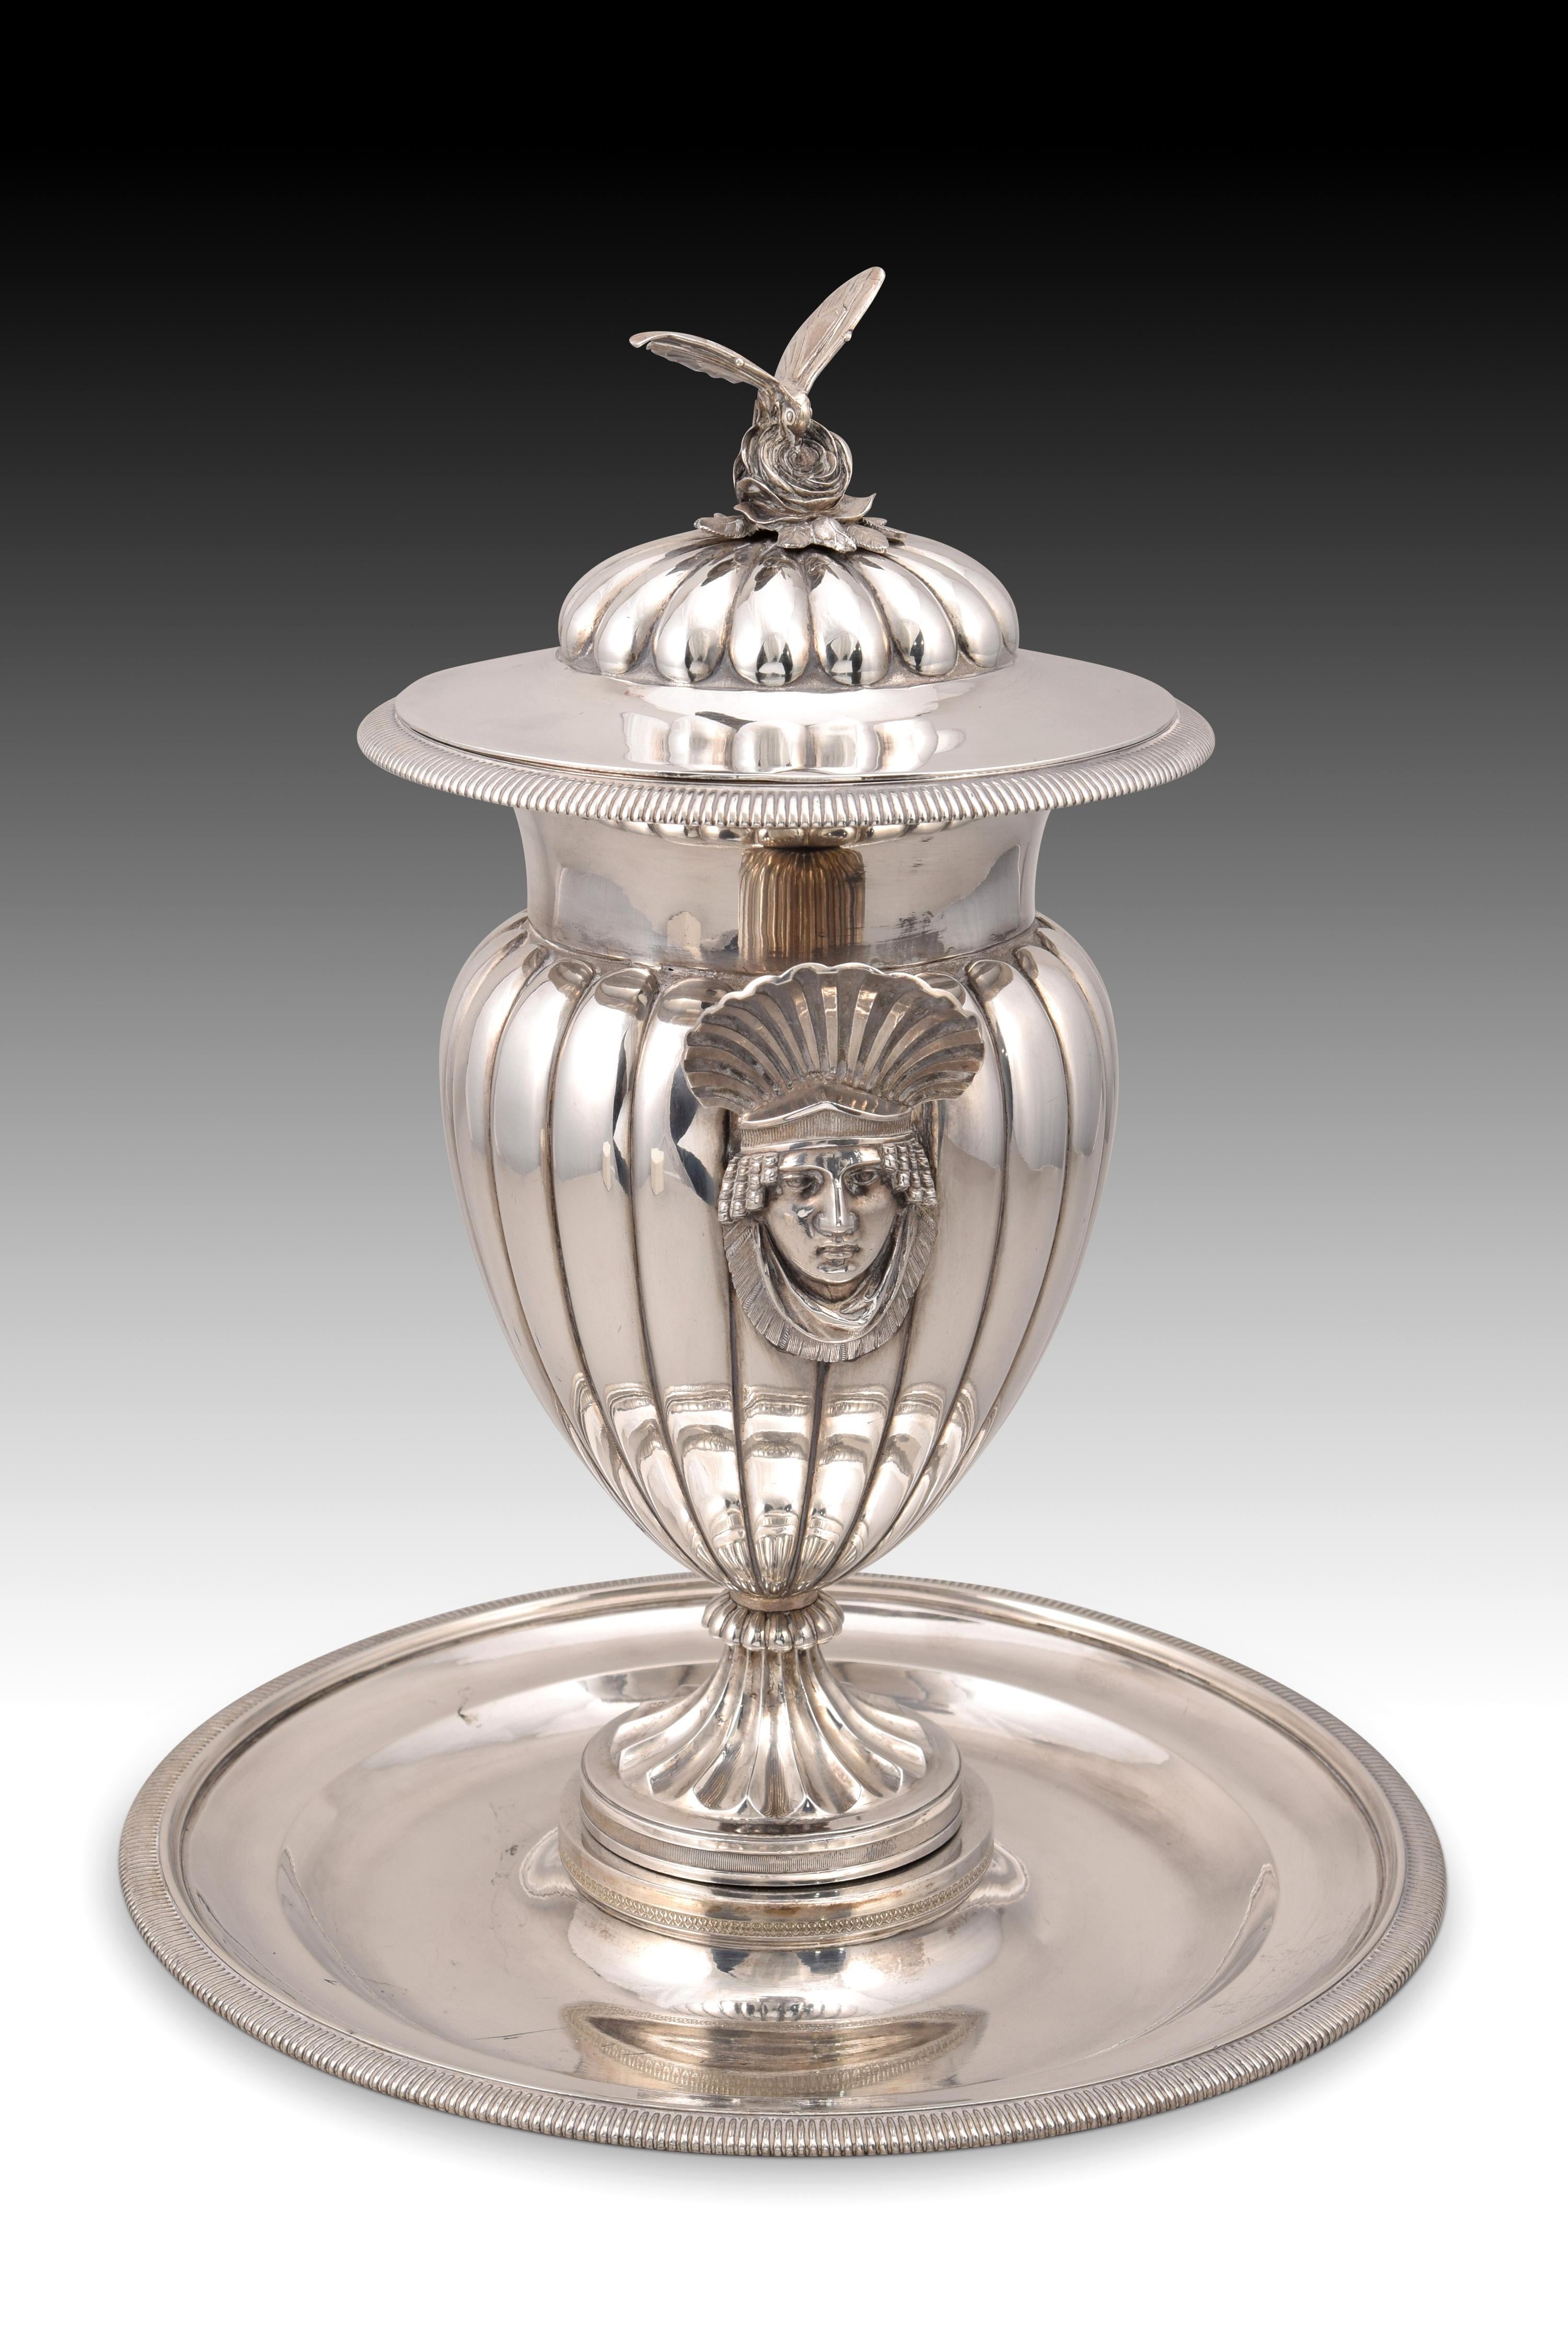 Tasse mit Tablett. Silber. Königliche Silberfabrik von Antonio Martínez. Madrid, Spanien, 1830er Jahre. 
Modell katalogisiert in 